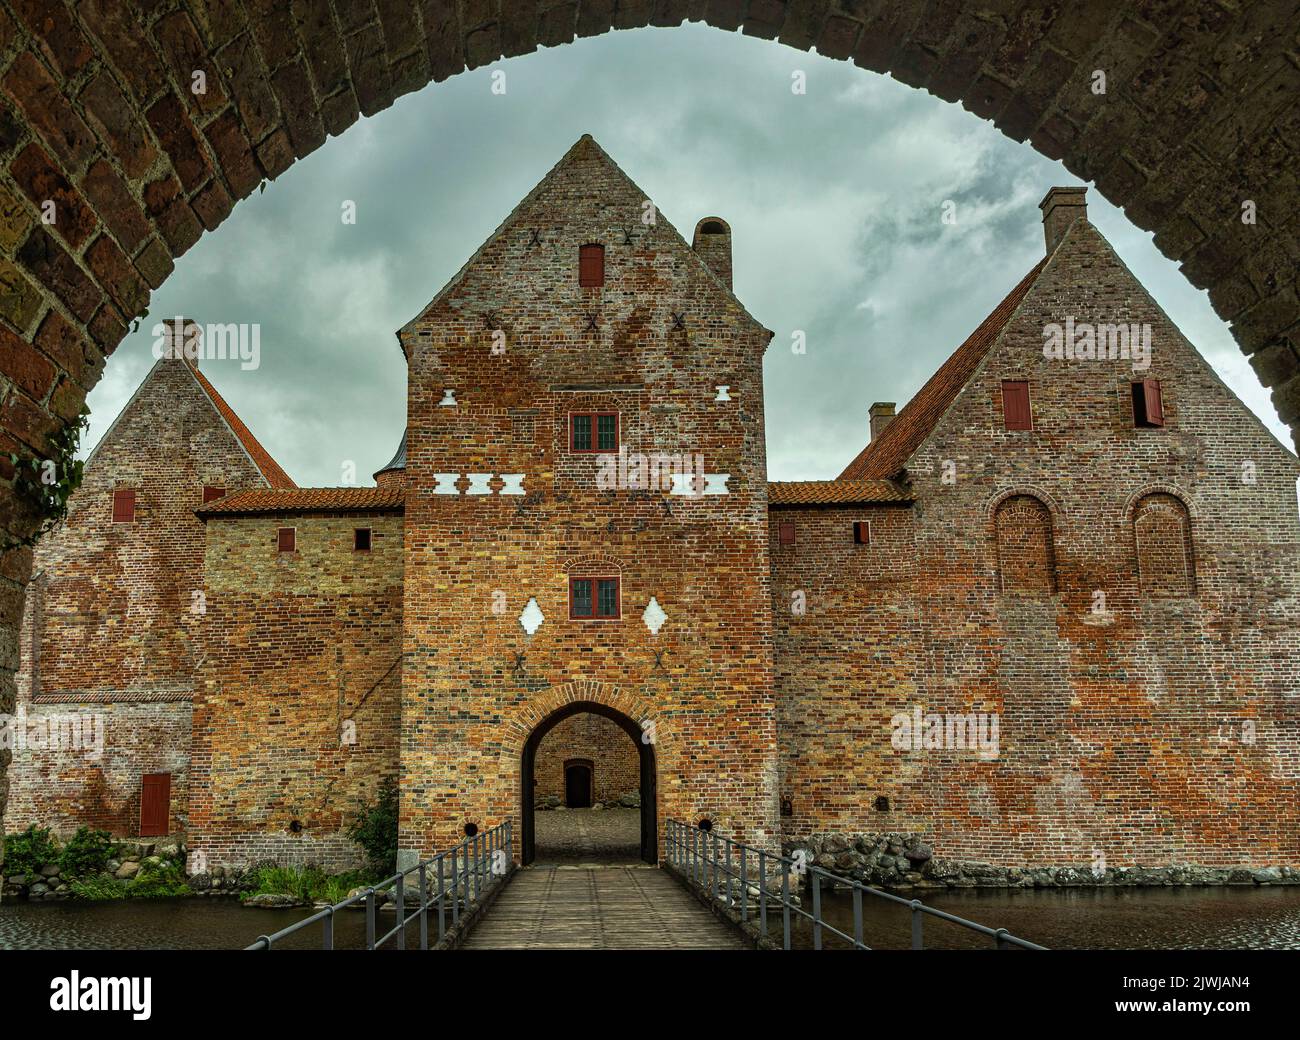 Il castello di Spøttrup, costruito nel 1520 su richiesta del vescovo di Viborg, è una fortificazione situata in Danimarca. Skive, Jutland centrale, Danimarca, Europa Foto Stock